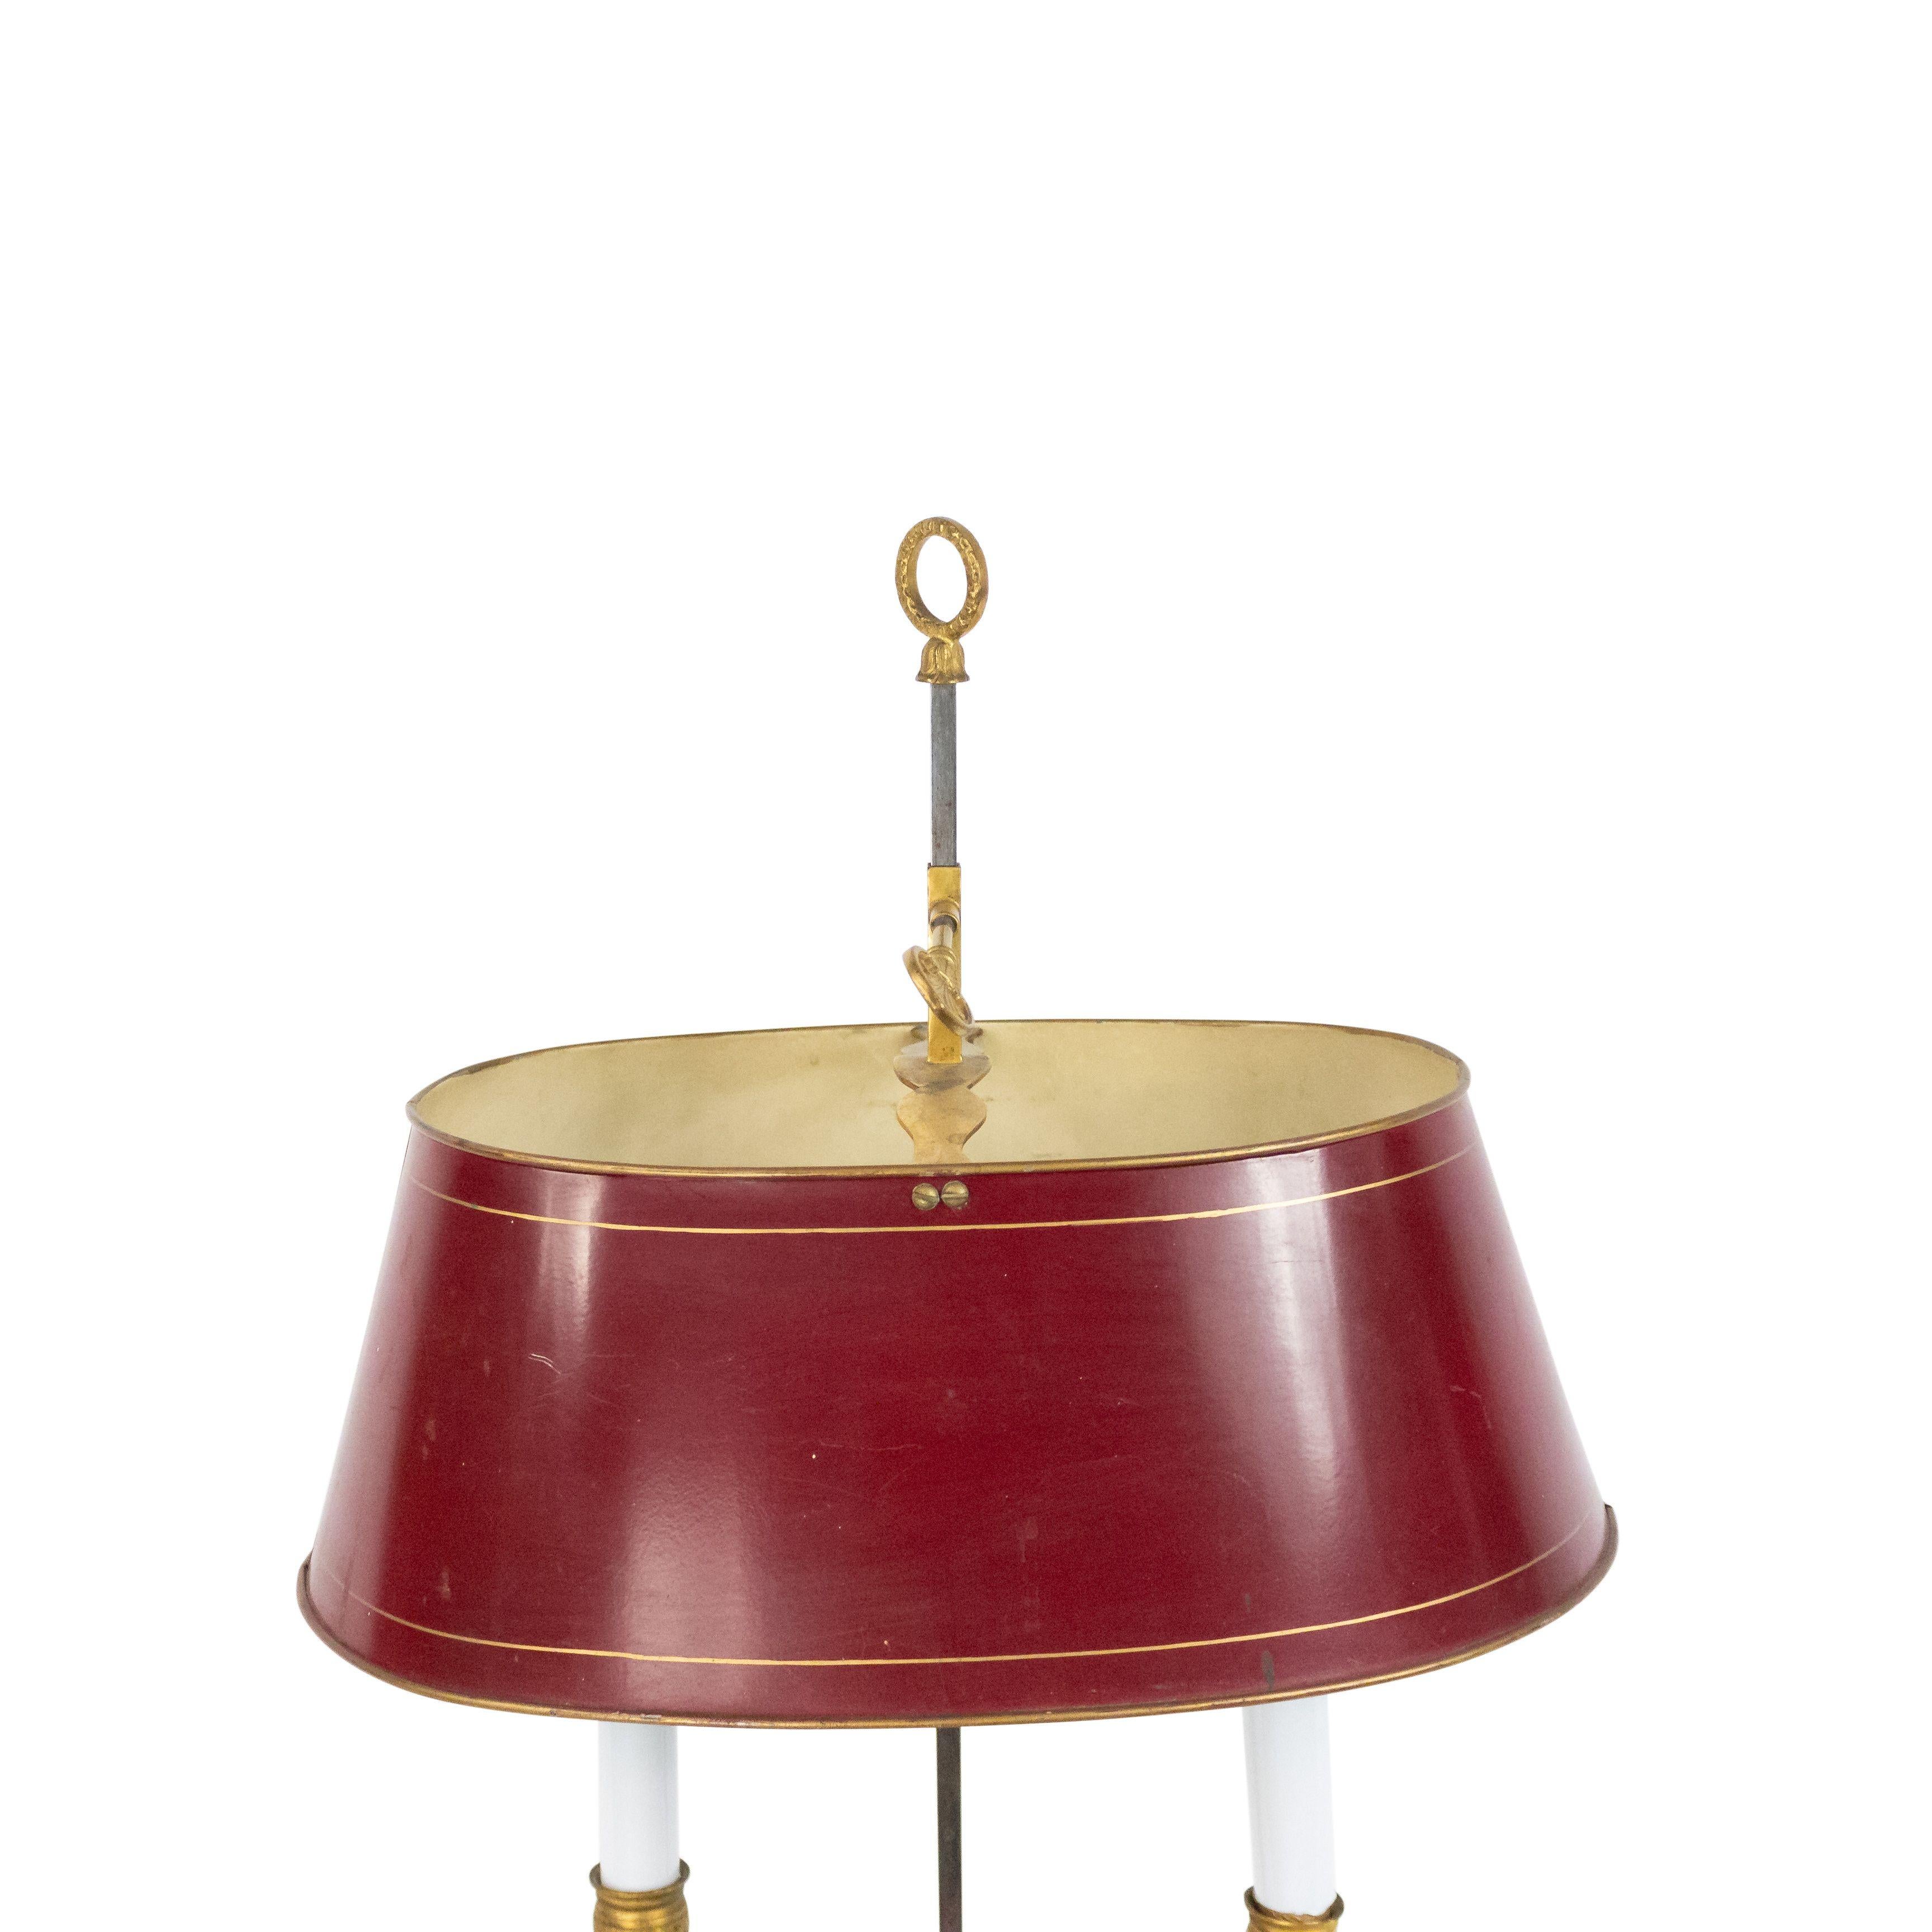 Lampe de table bouillotte à 2 bras de style Empire français, en bronze doré, avec des bras en forme de cygne sous un abat-jour ajustable en tole rouge 20e siècle.